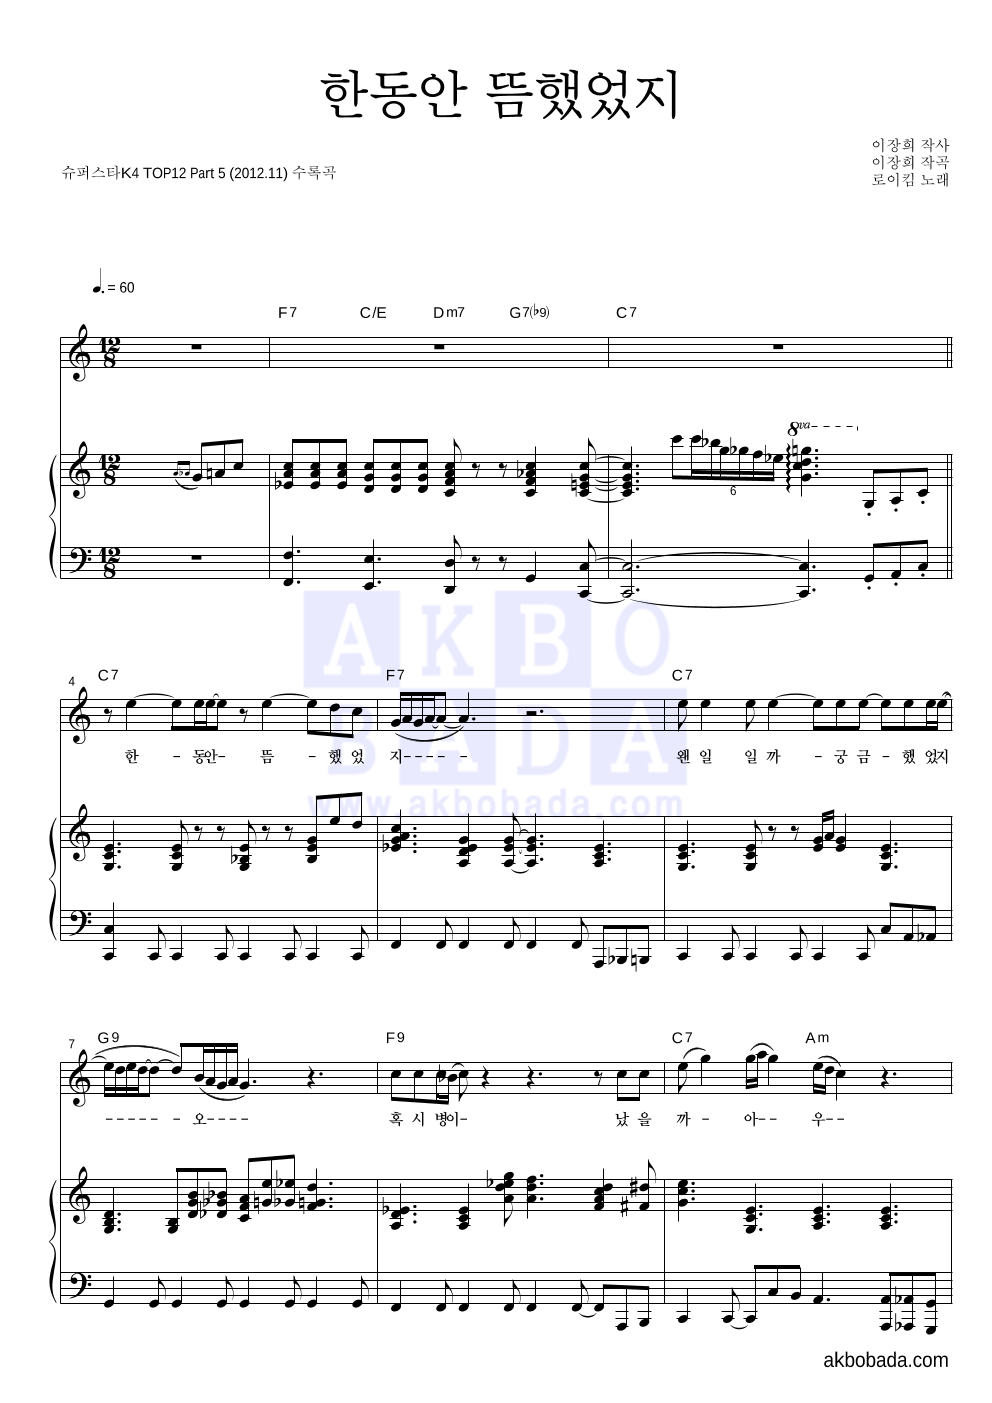 로이킴 - 한동안 뜸했었지 피아노 3단 악보 